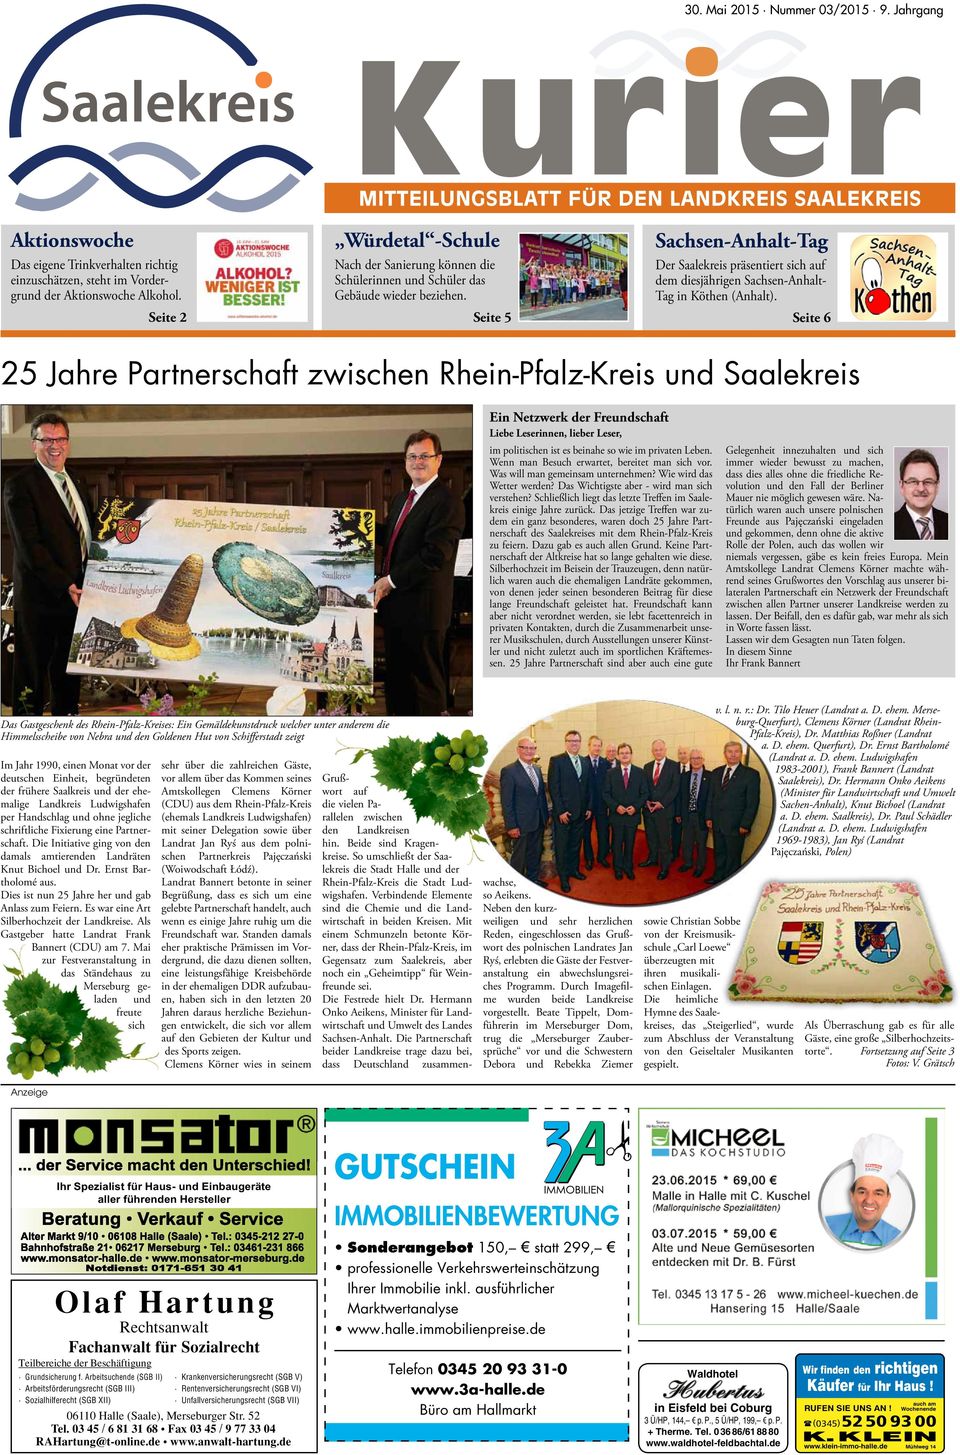 Seite 5 Sachsen-Anhalt-Tag Der Saalekreis präsentiert sich auf dem diesjährigen Sachsen-Anhalt- Tag in Köthen (Anhalt).